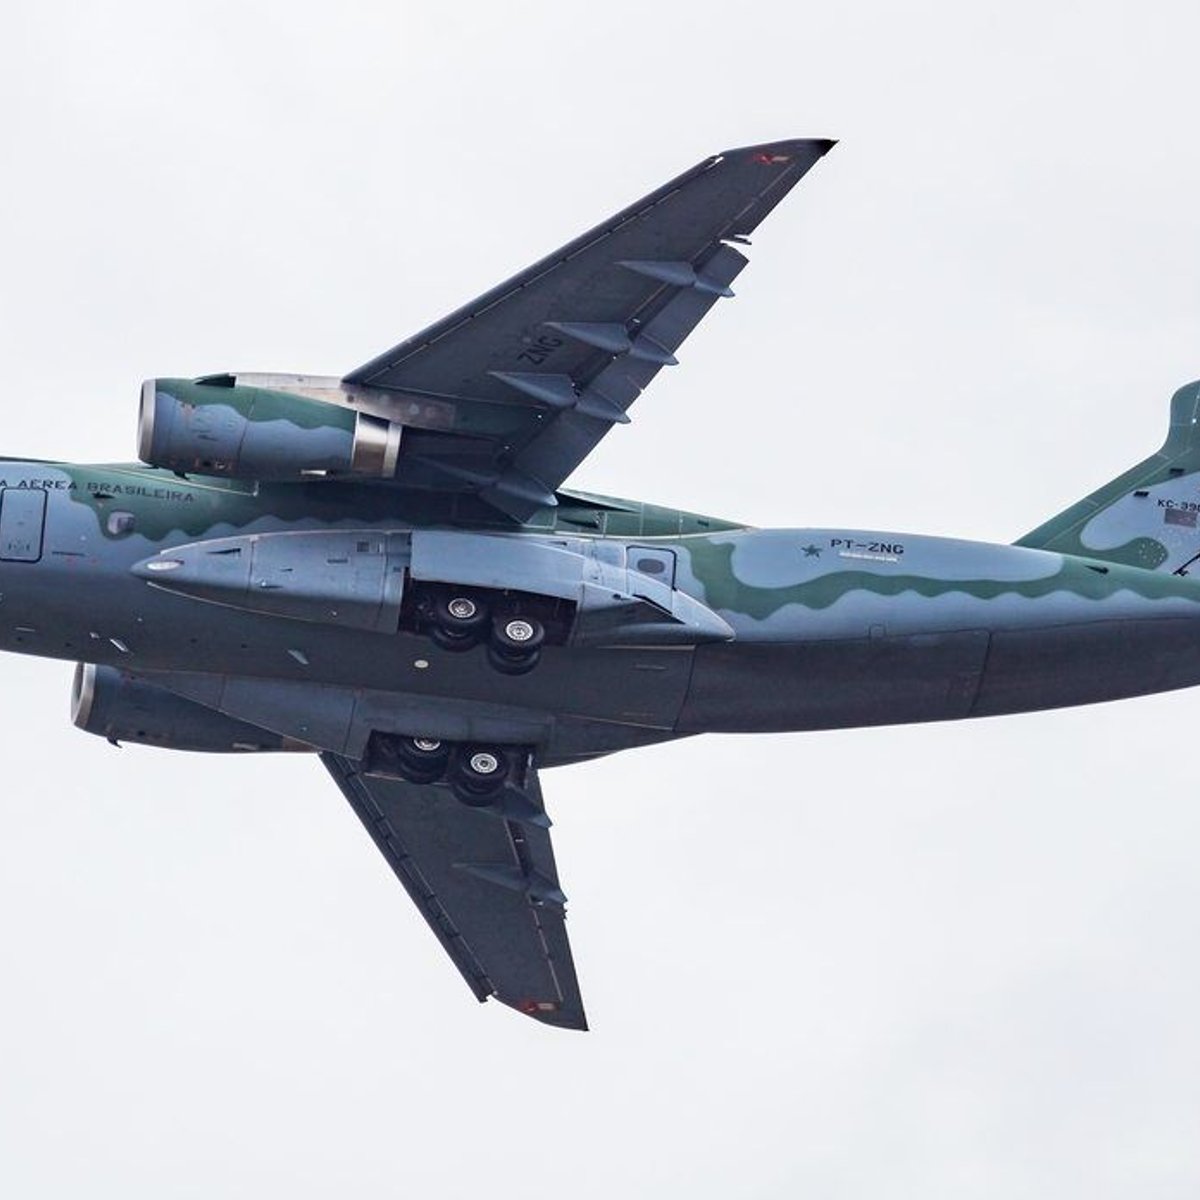 Quantos KC-390 a Embraer pode vender a países interessados no maior avião  brasileiro? - Airway